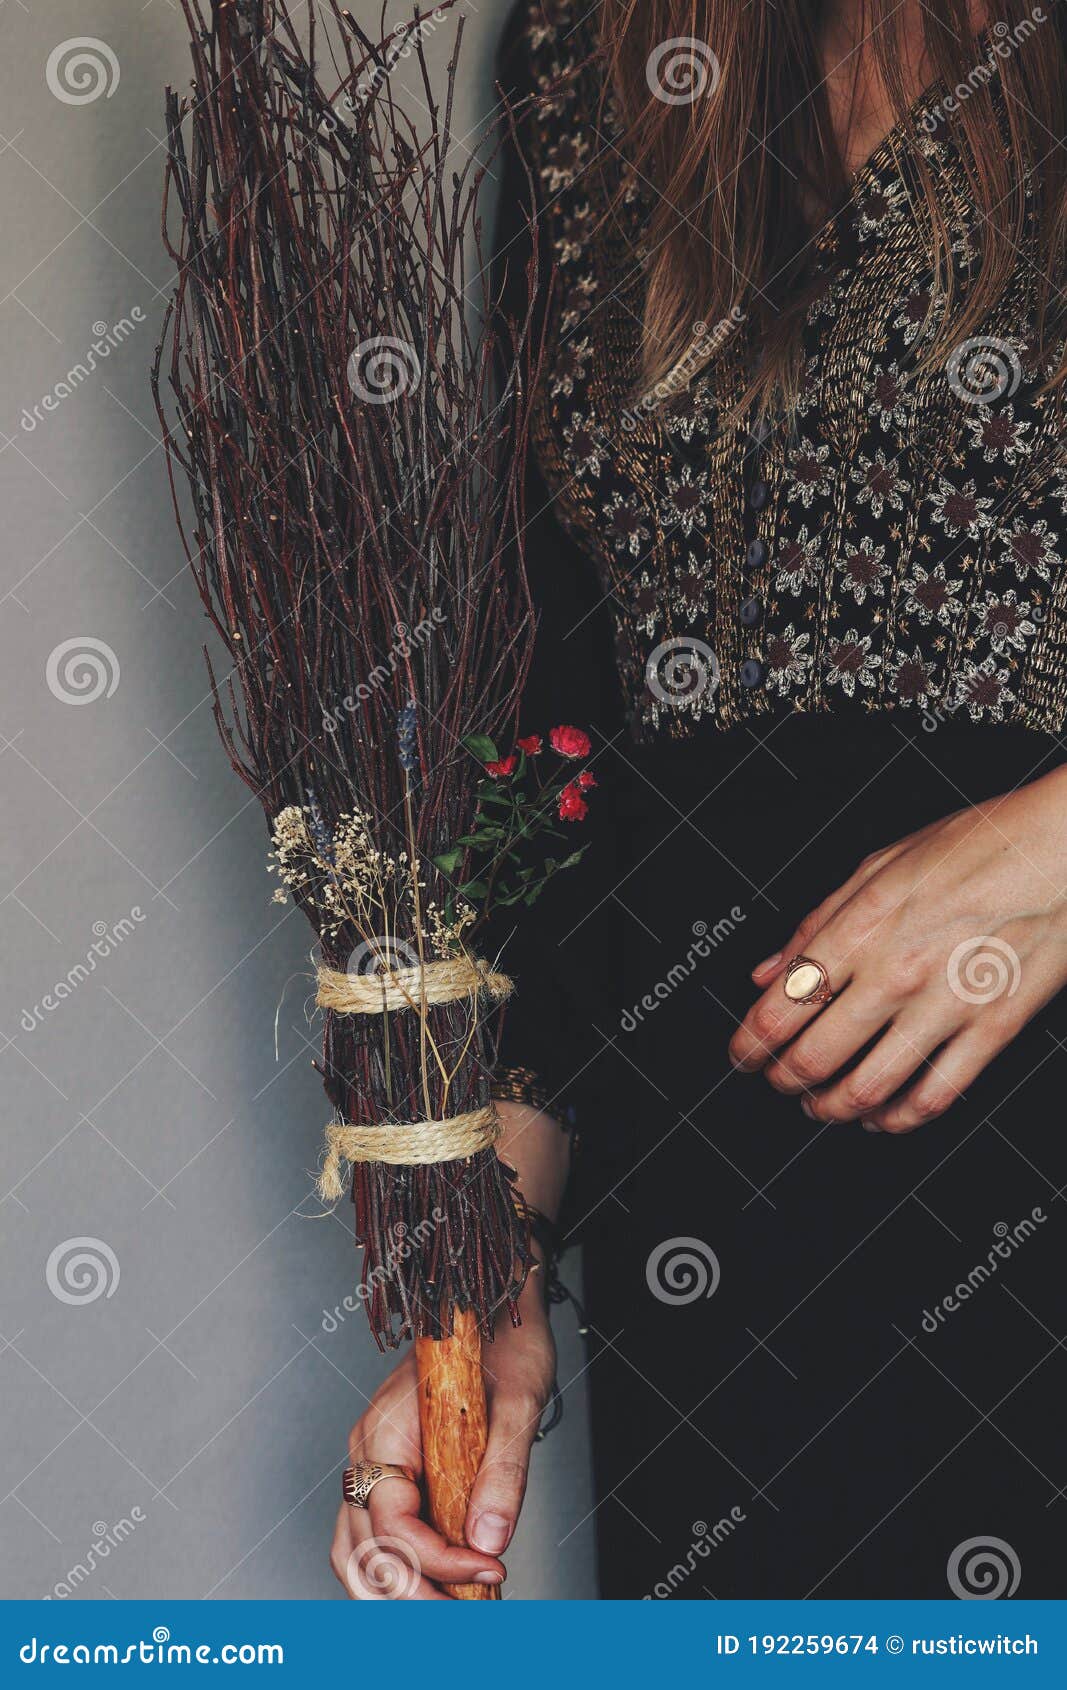 Três lindas bruxas com vassouras e flores em suas mãos